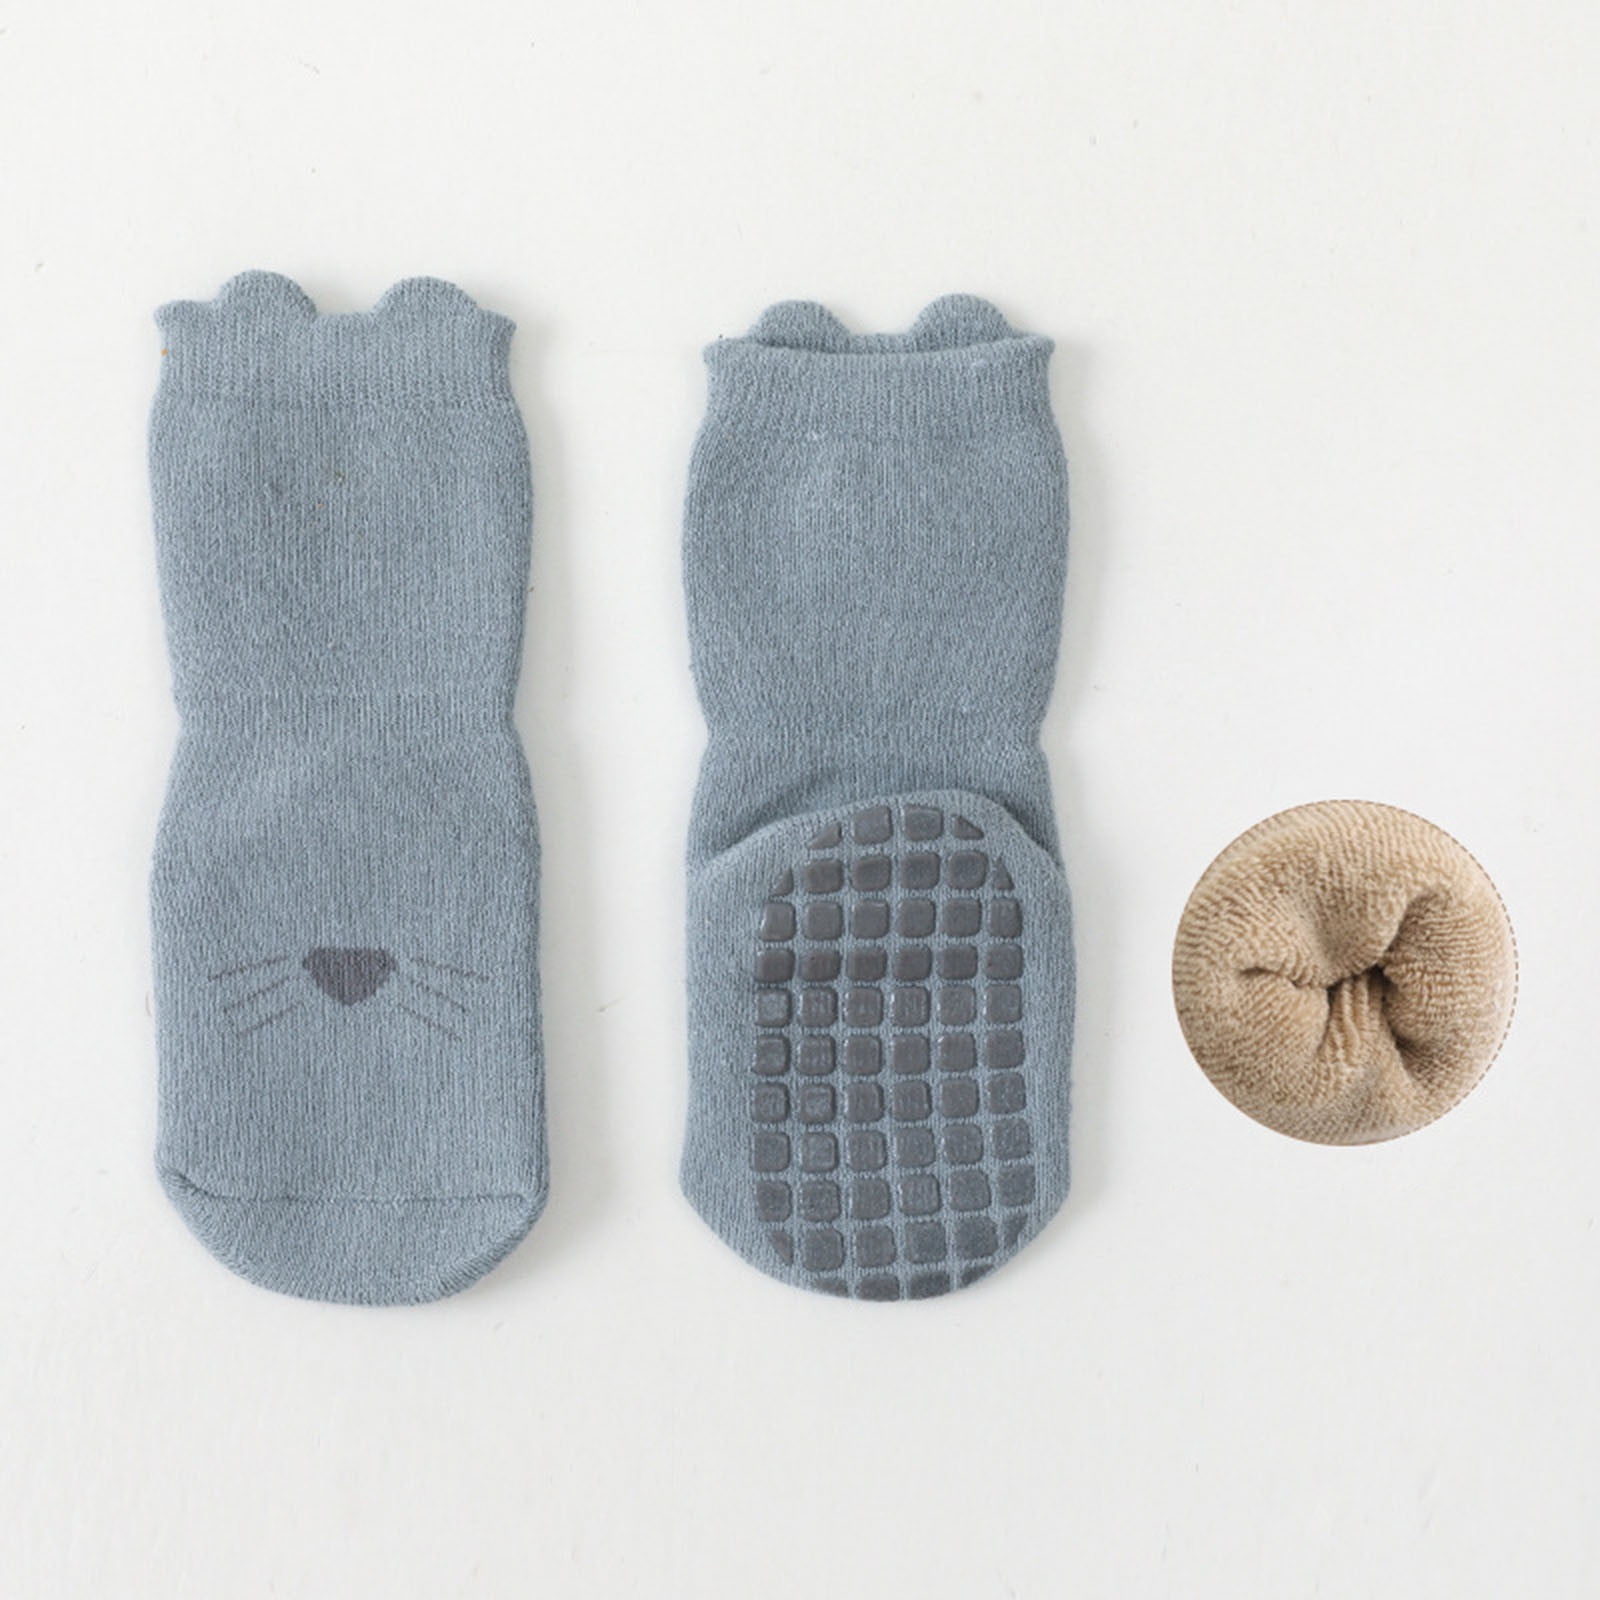 Herrnalise Little YogaSocks,Quality High-grip Socks For Early